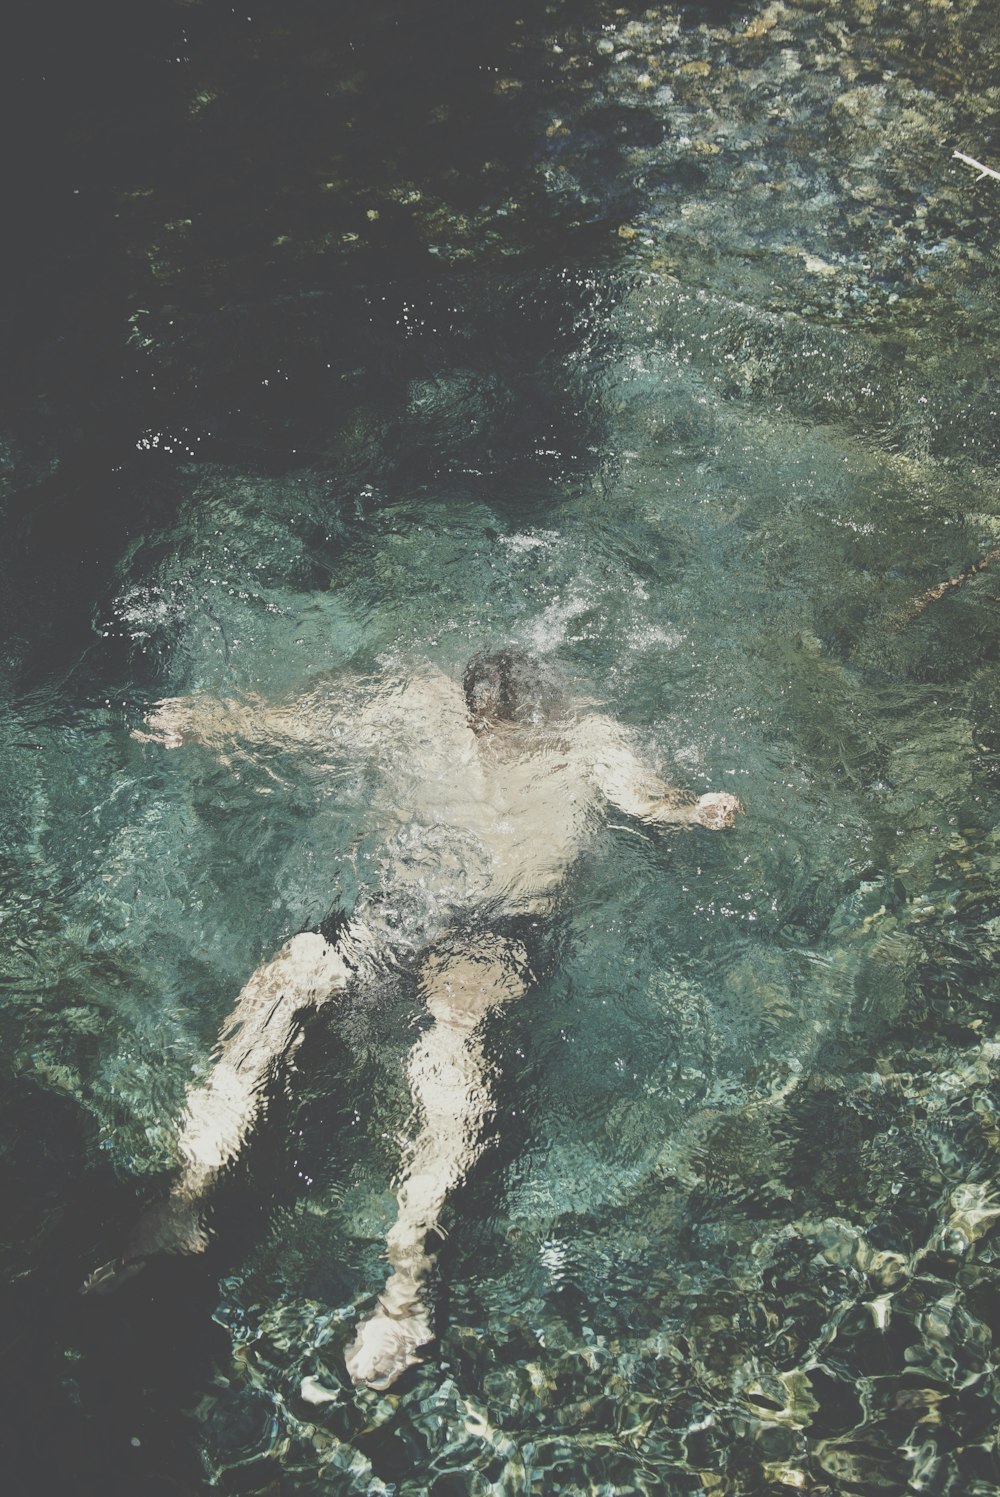 person submerged underwater